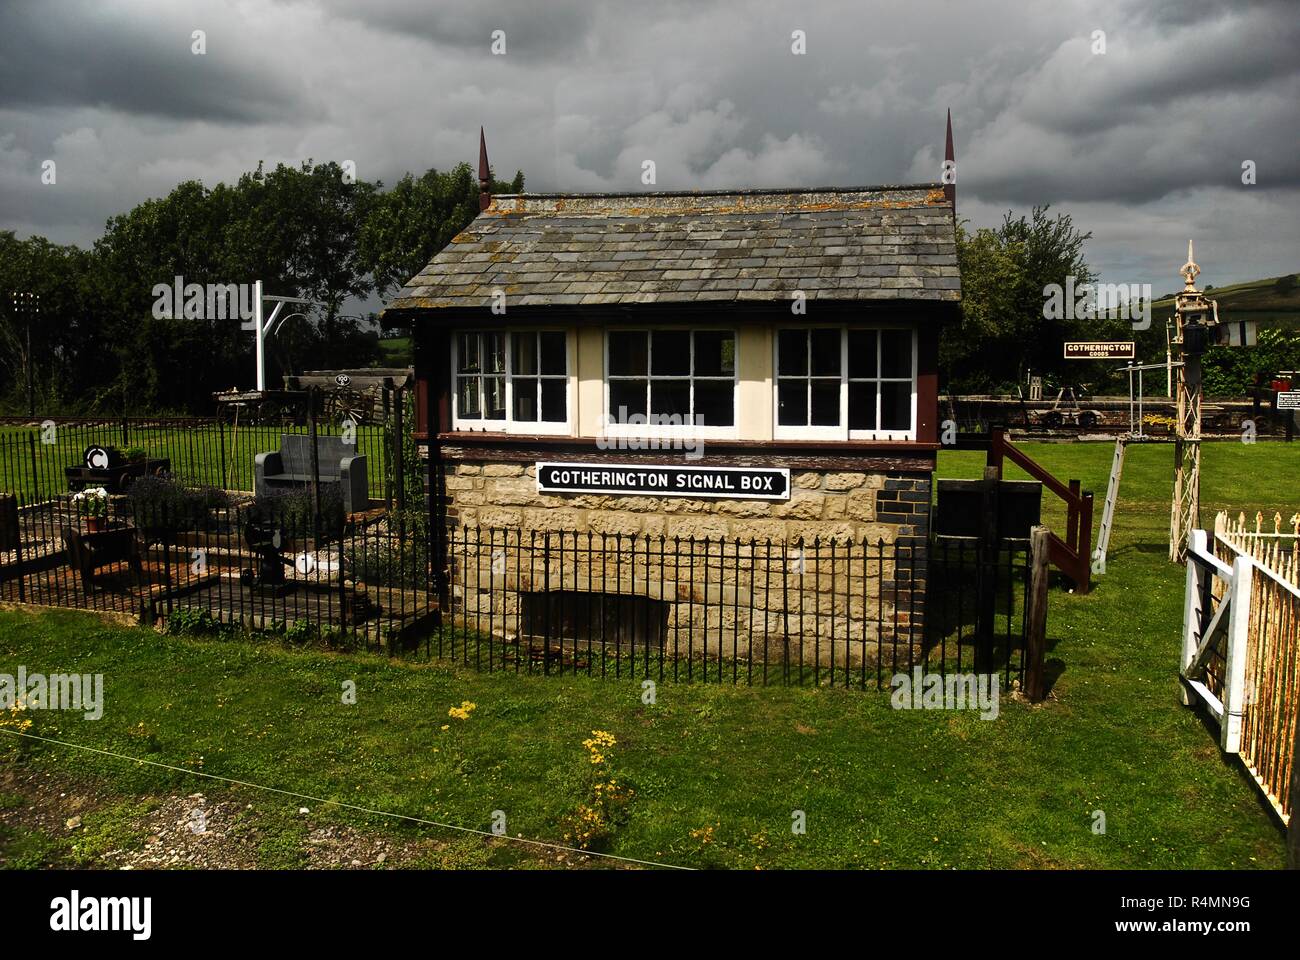 Il segnale Gotherington casella del Gloucestershire e Warwickshire Steam Railway, REGNO UNITO Foto Stock